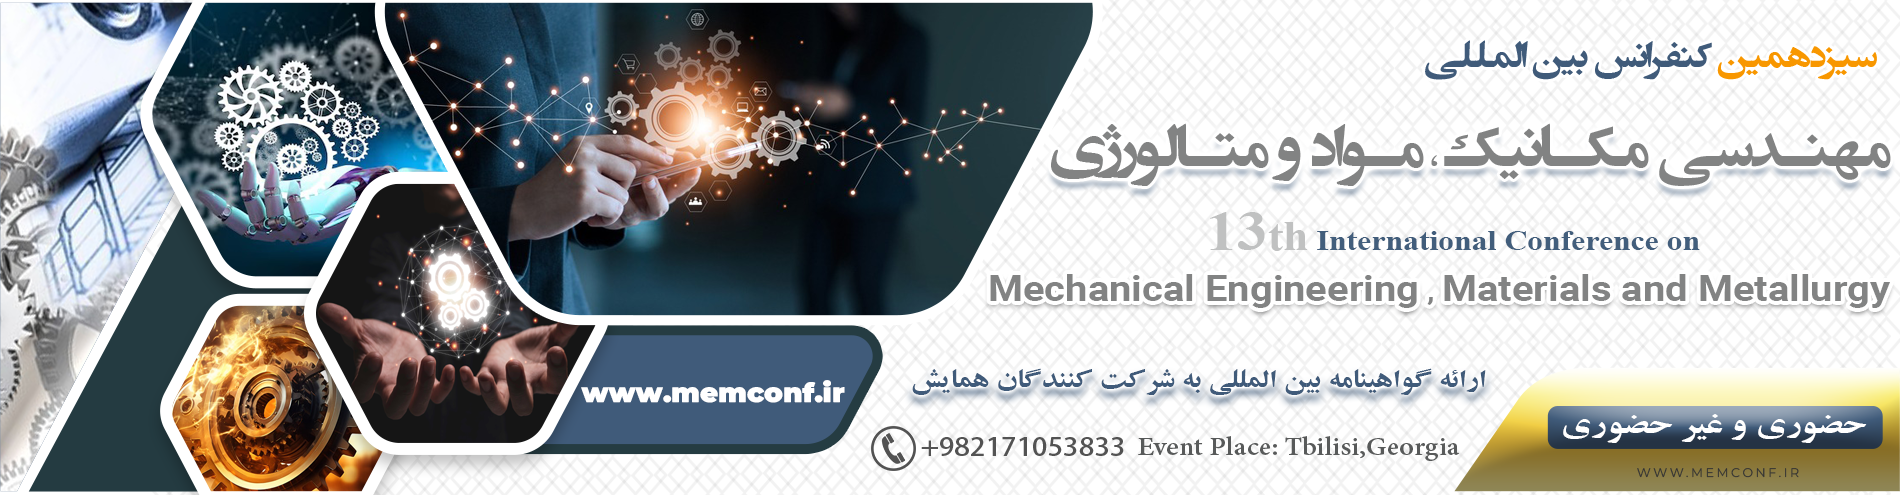 کنفرانس بین المللی مهندسی مکانیک ، مواد و متالورژی